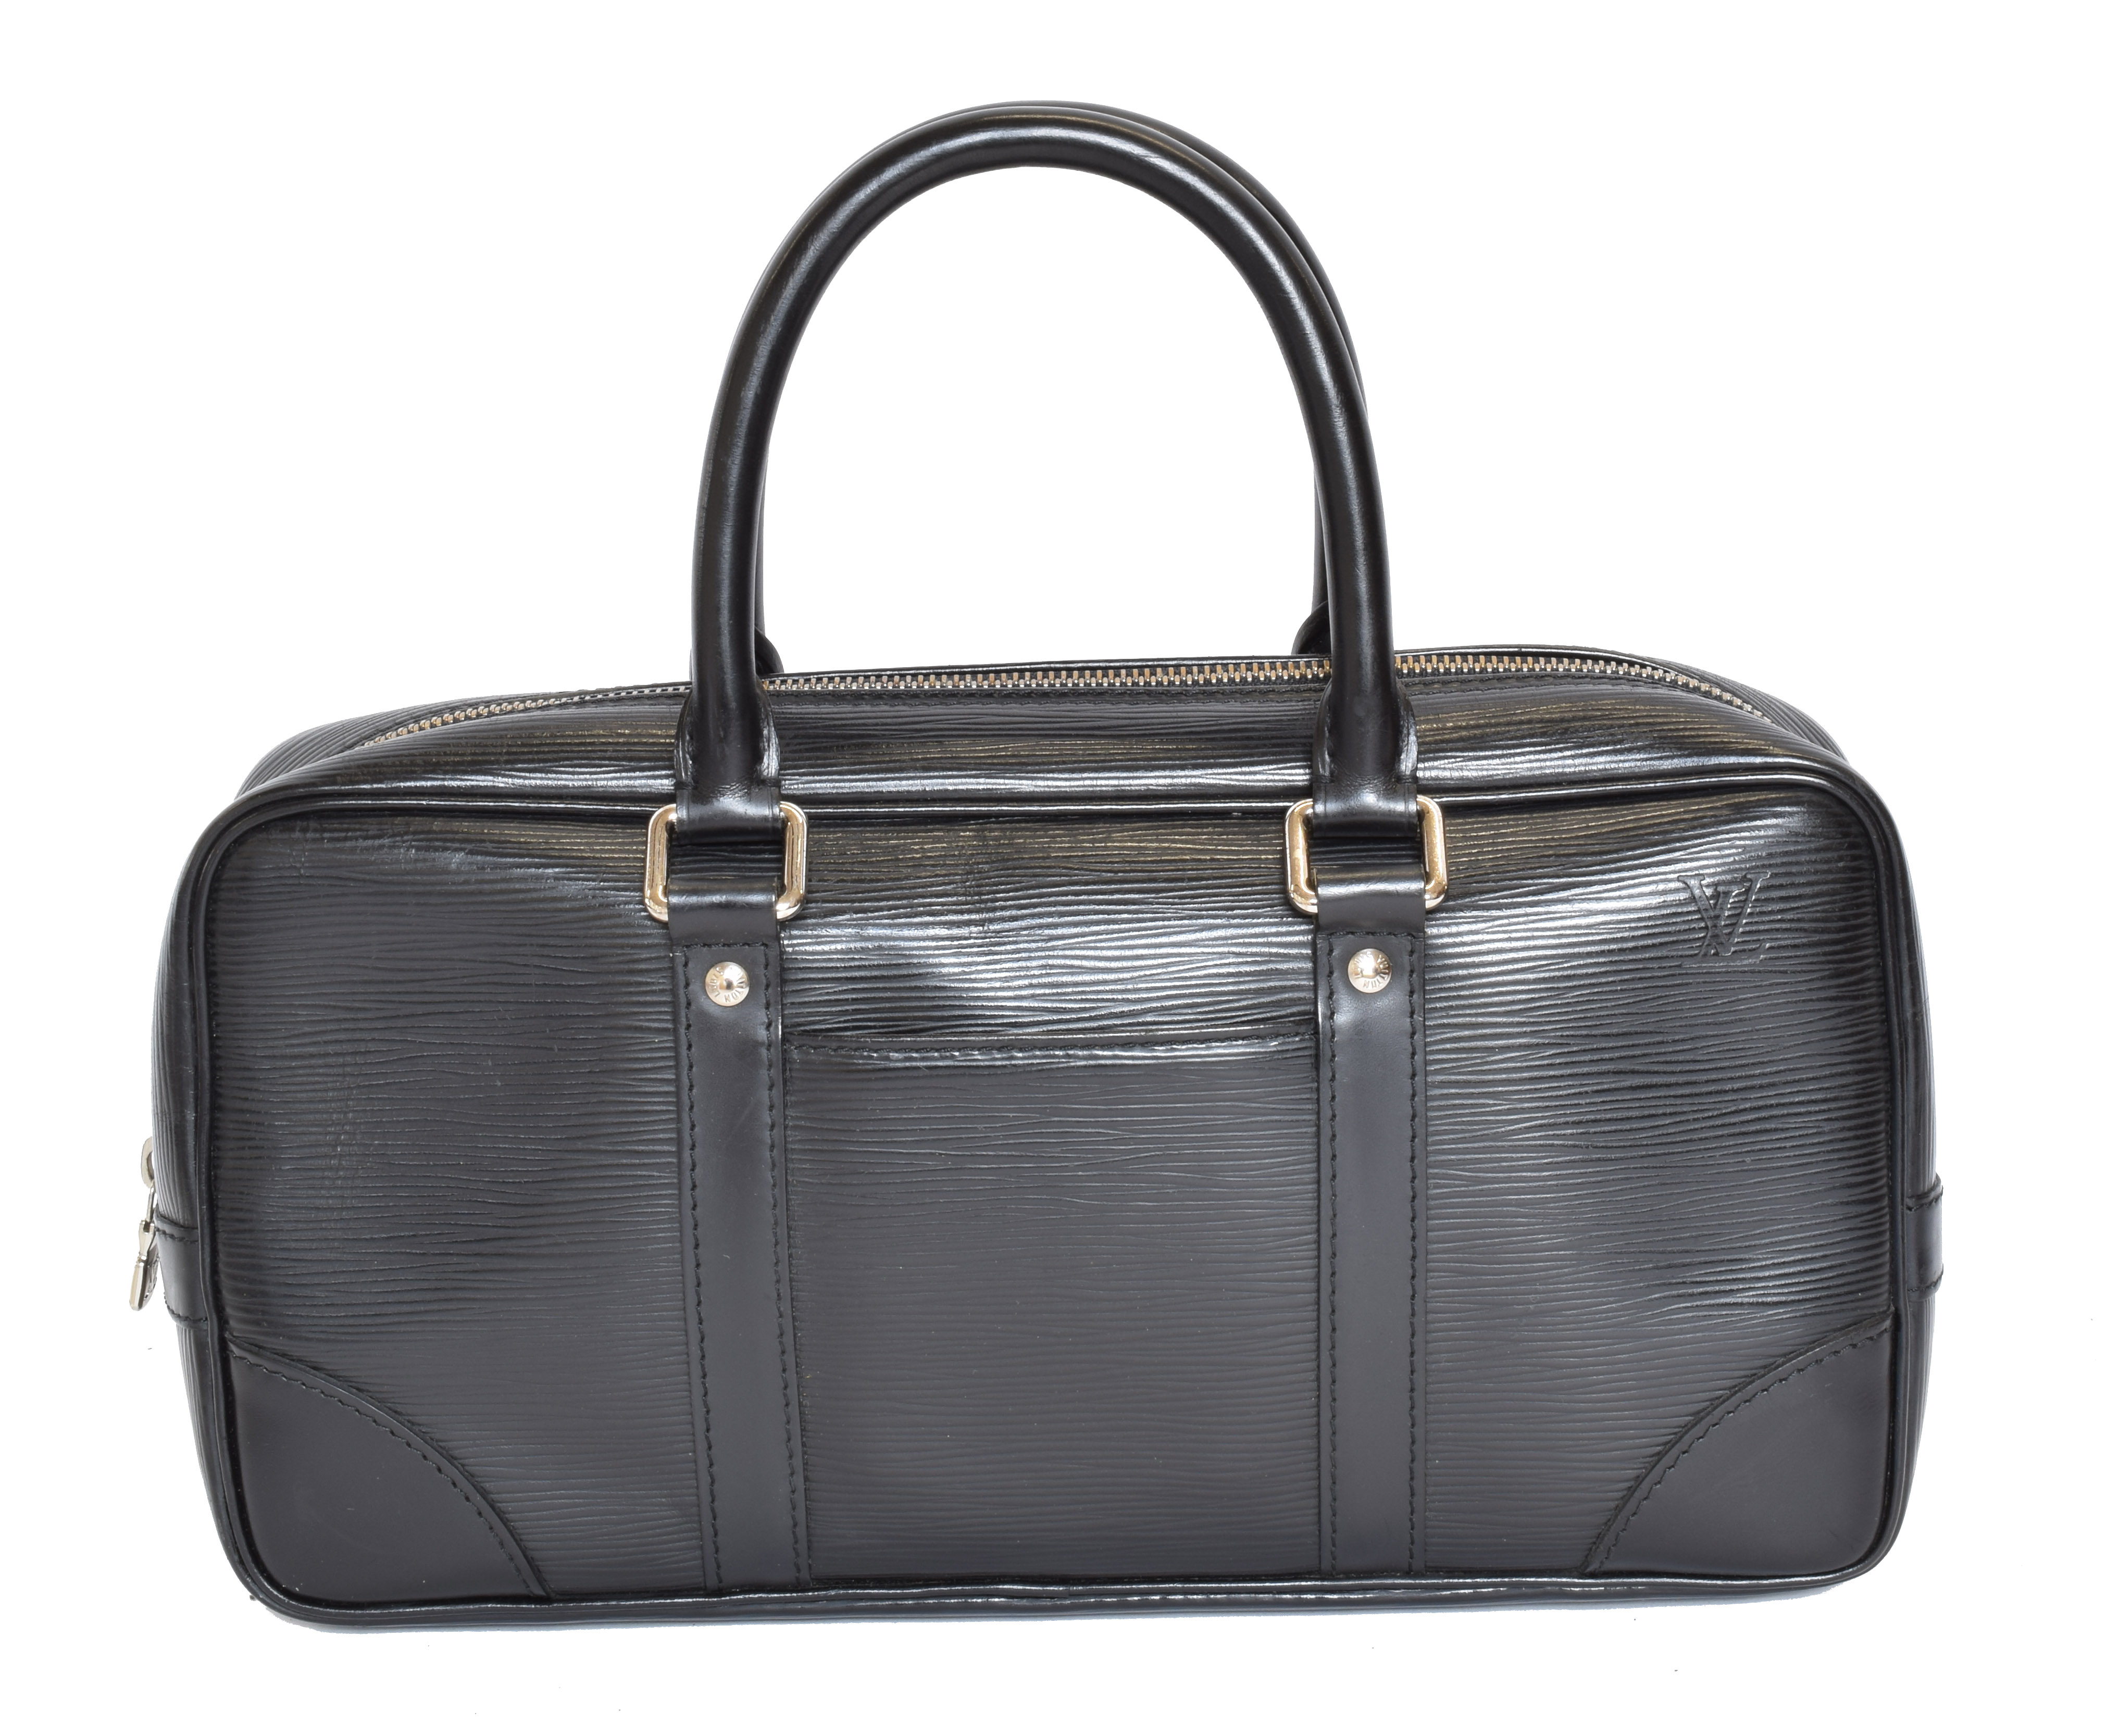 A Louis Vuitton Epi Vivienne Bag, - Image 2 of 2